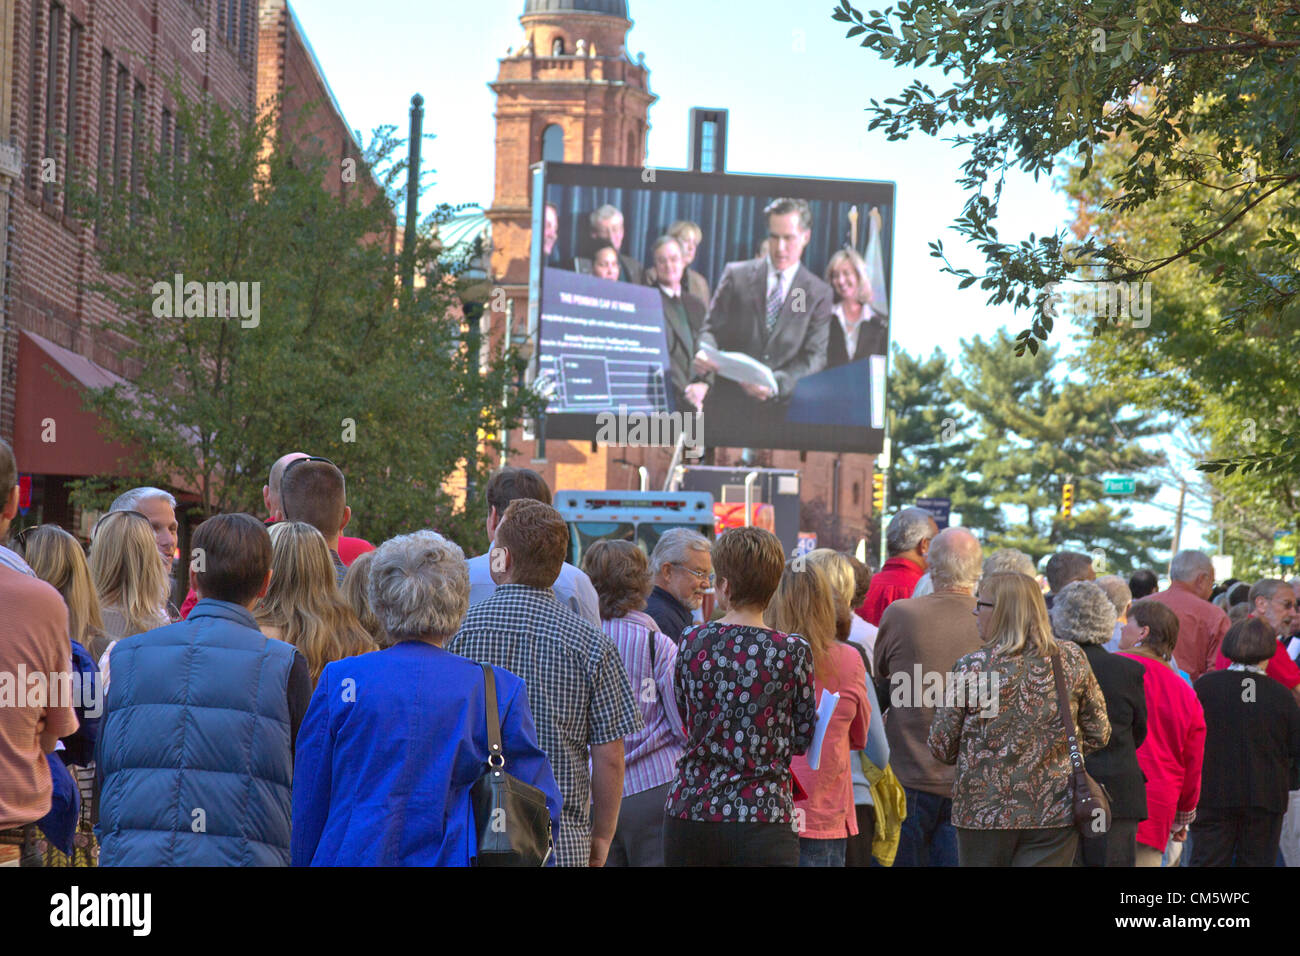 Asheville, Caroline du Nord, USA. 11 octobre 2012. Les gens font la queue près d'un grand écran vidéo montrant une vidéo de campagne de Mitt Romney et attendre d'entrer dans la campagne présidentielle de Mitt Romney rassemblement à Asheville, en Caroline du Nord, USA, le 11 octobre 2012 Banque D'Images